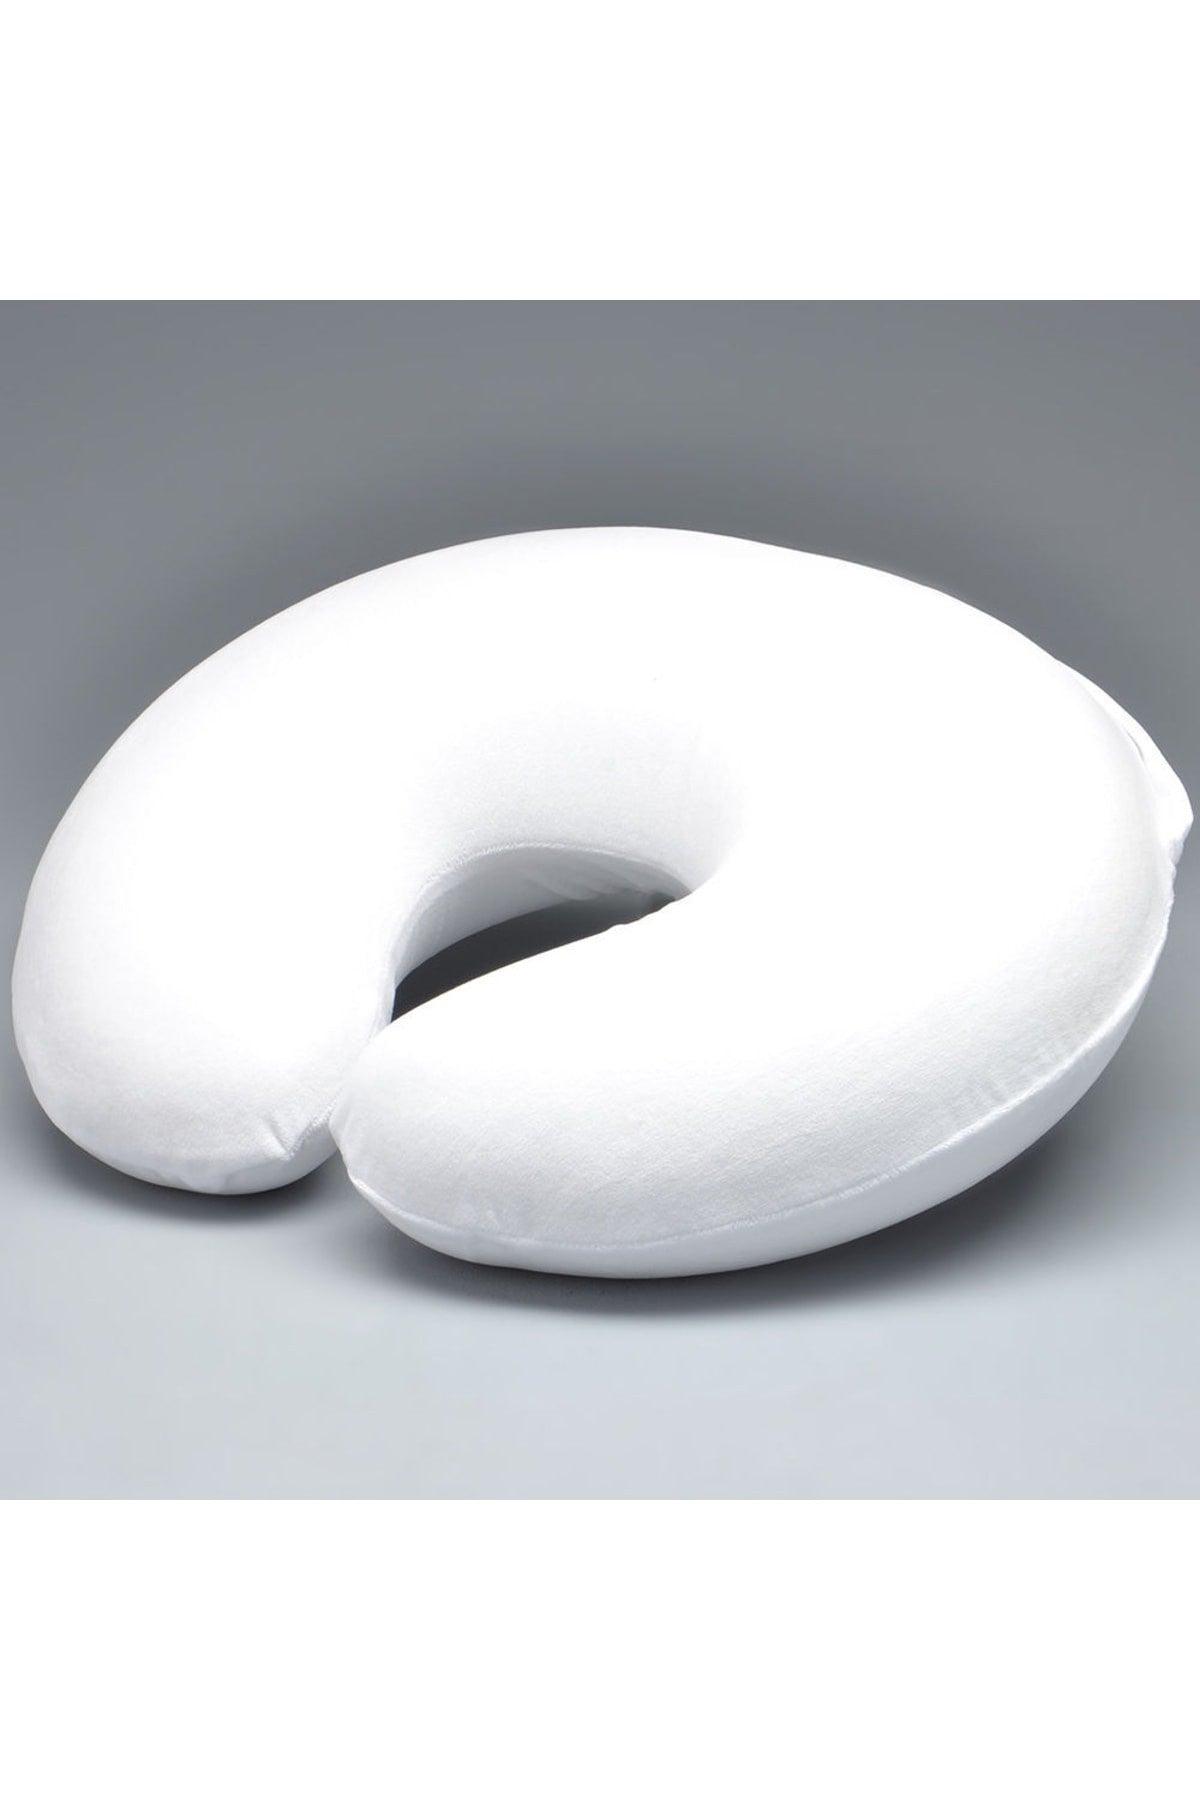 Visco Neck Pillow Orthopedic Visco Travel Neck Pillow White - Swordslife